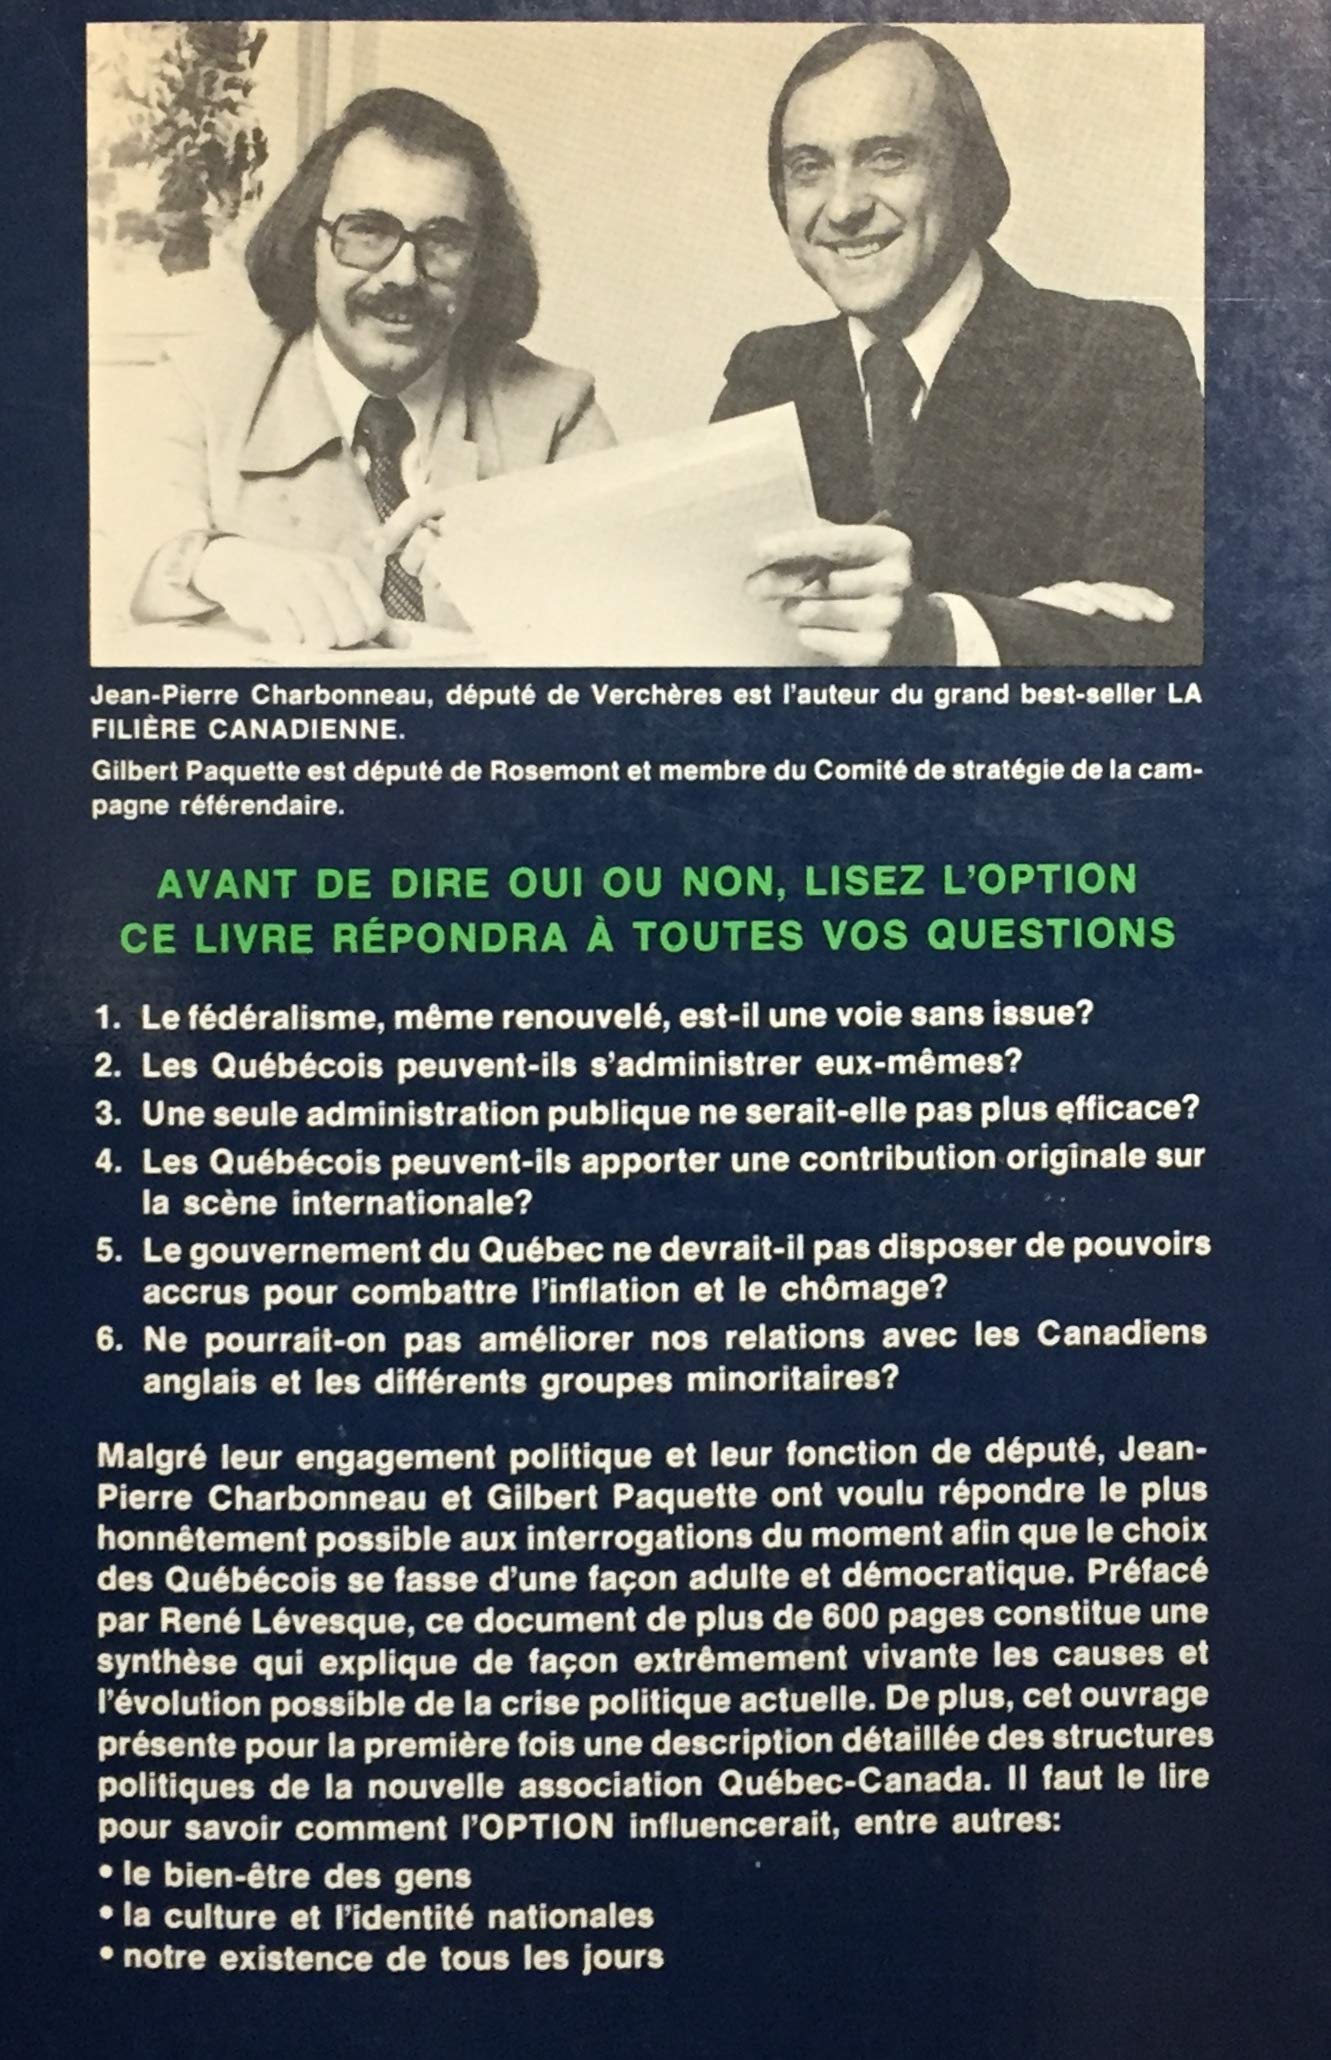 L'option (Jean-Pierre Charbonneau)